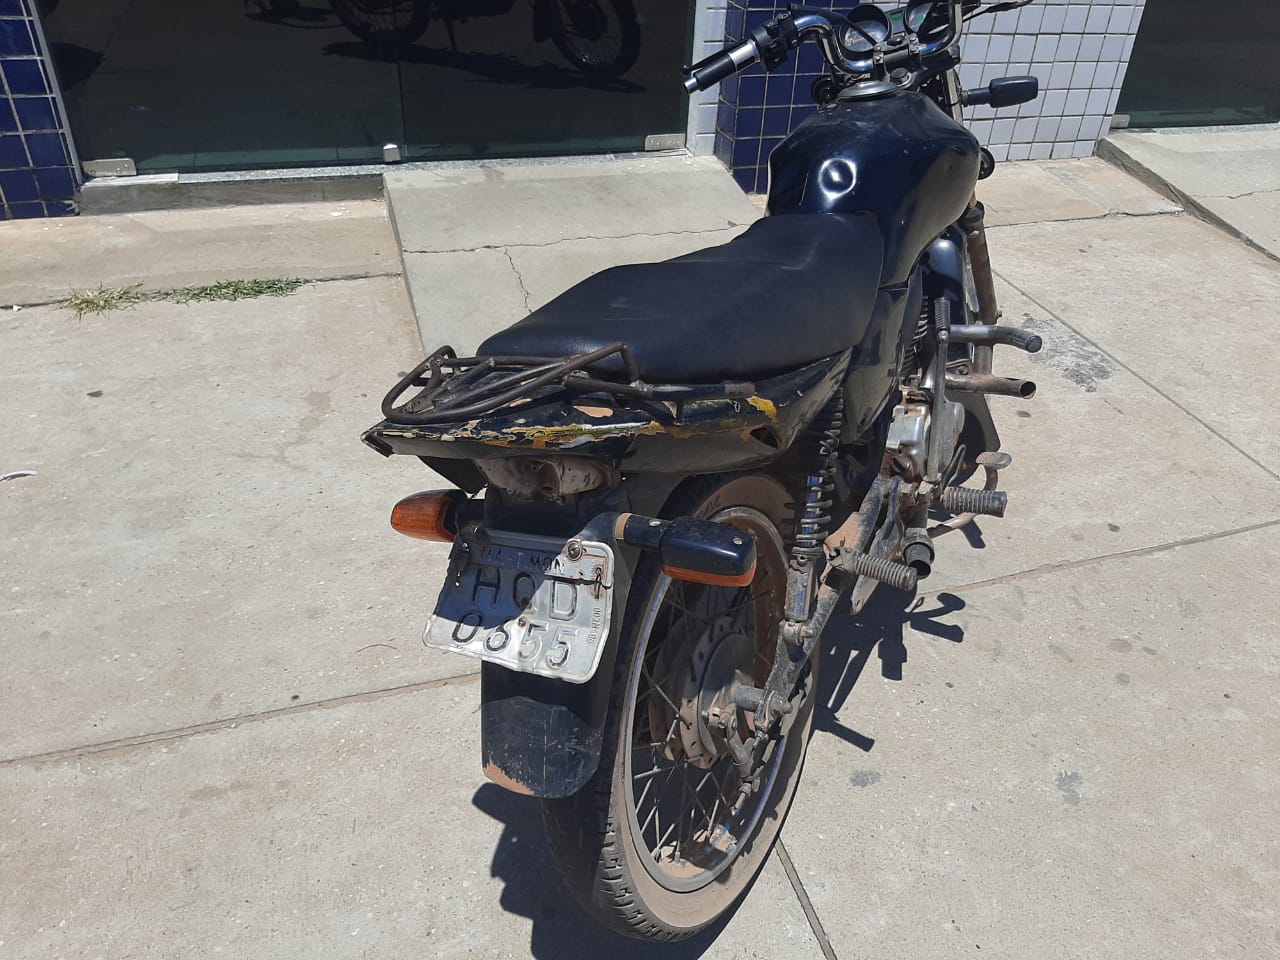 Motocicleta recuperada pela Polícia Civil do Piauí